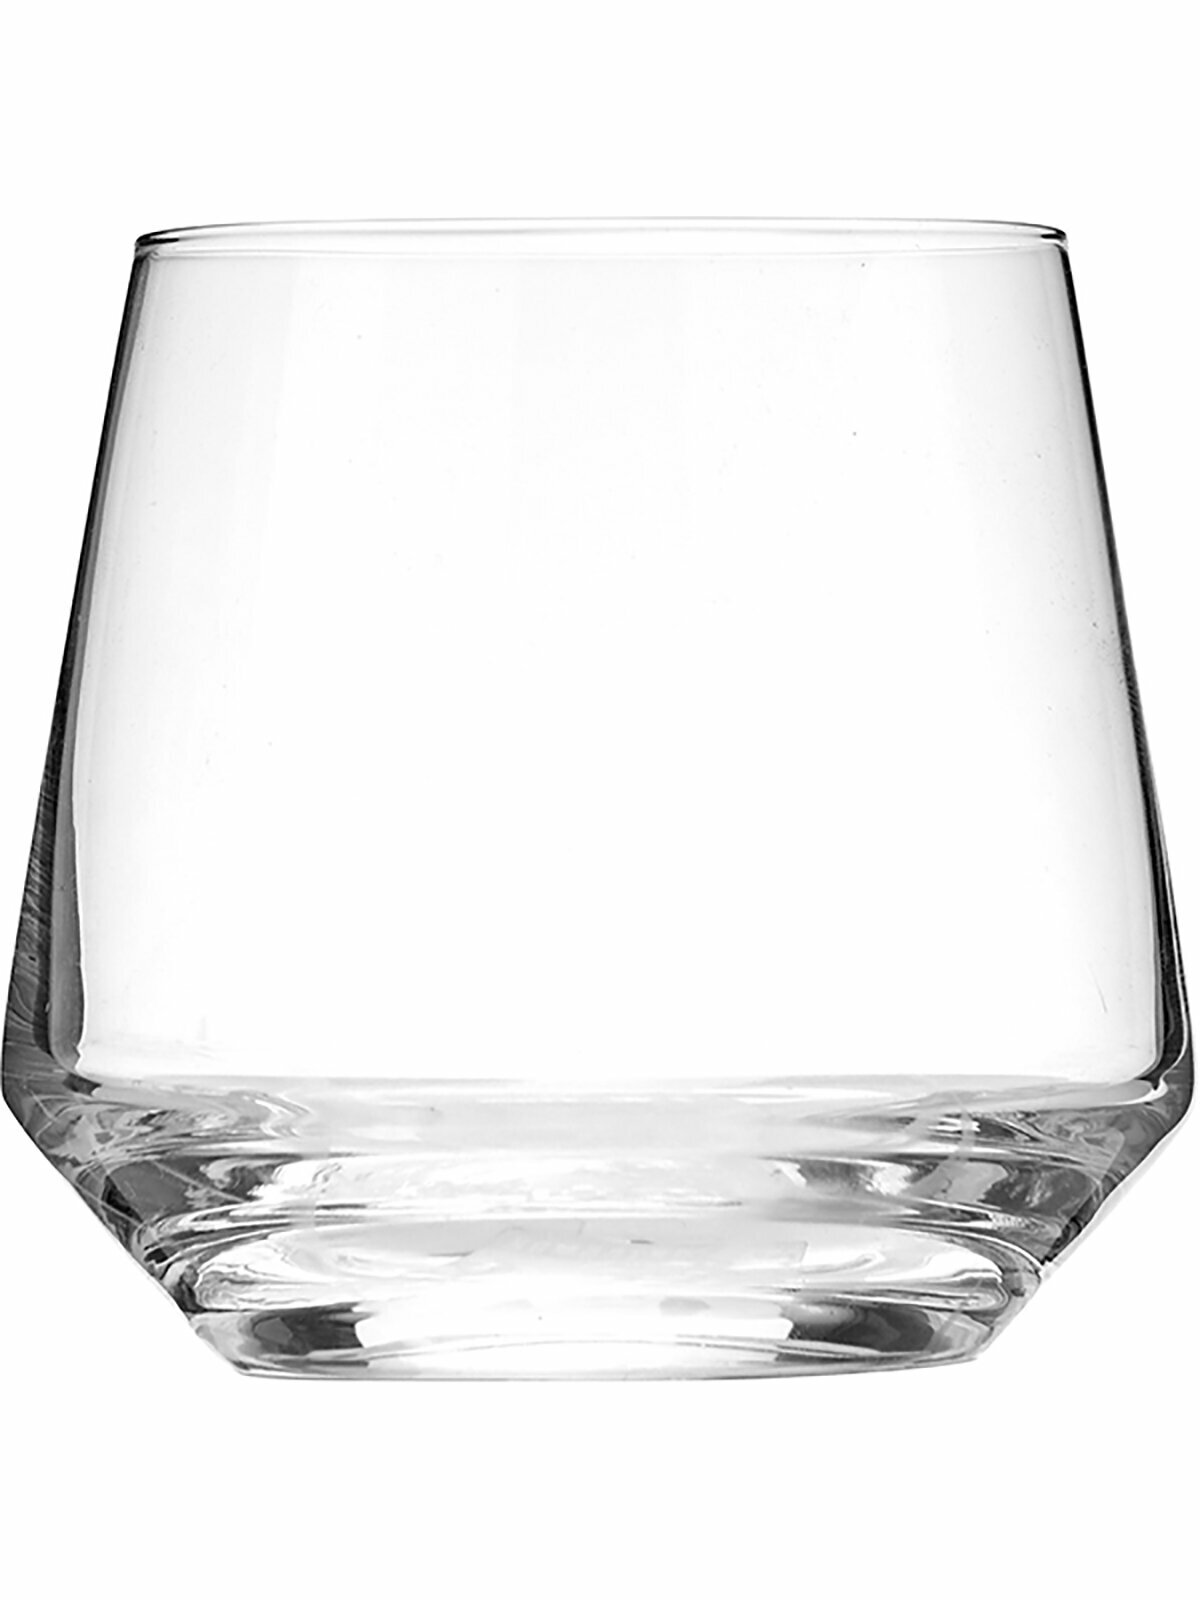 Олд фэшн Белфеста (Пьюр), Zwiesel Glas, хр. стекло, 390 мл